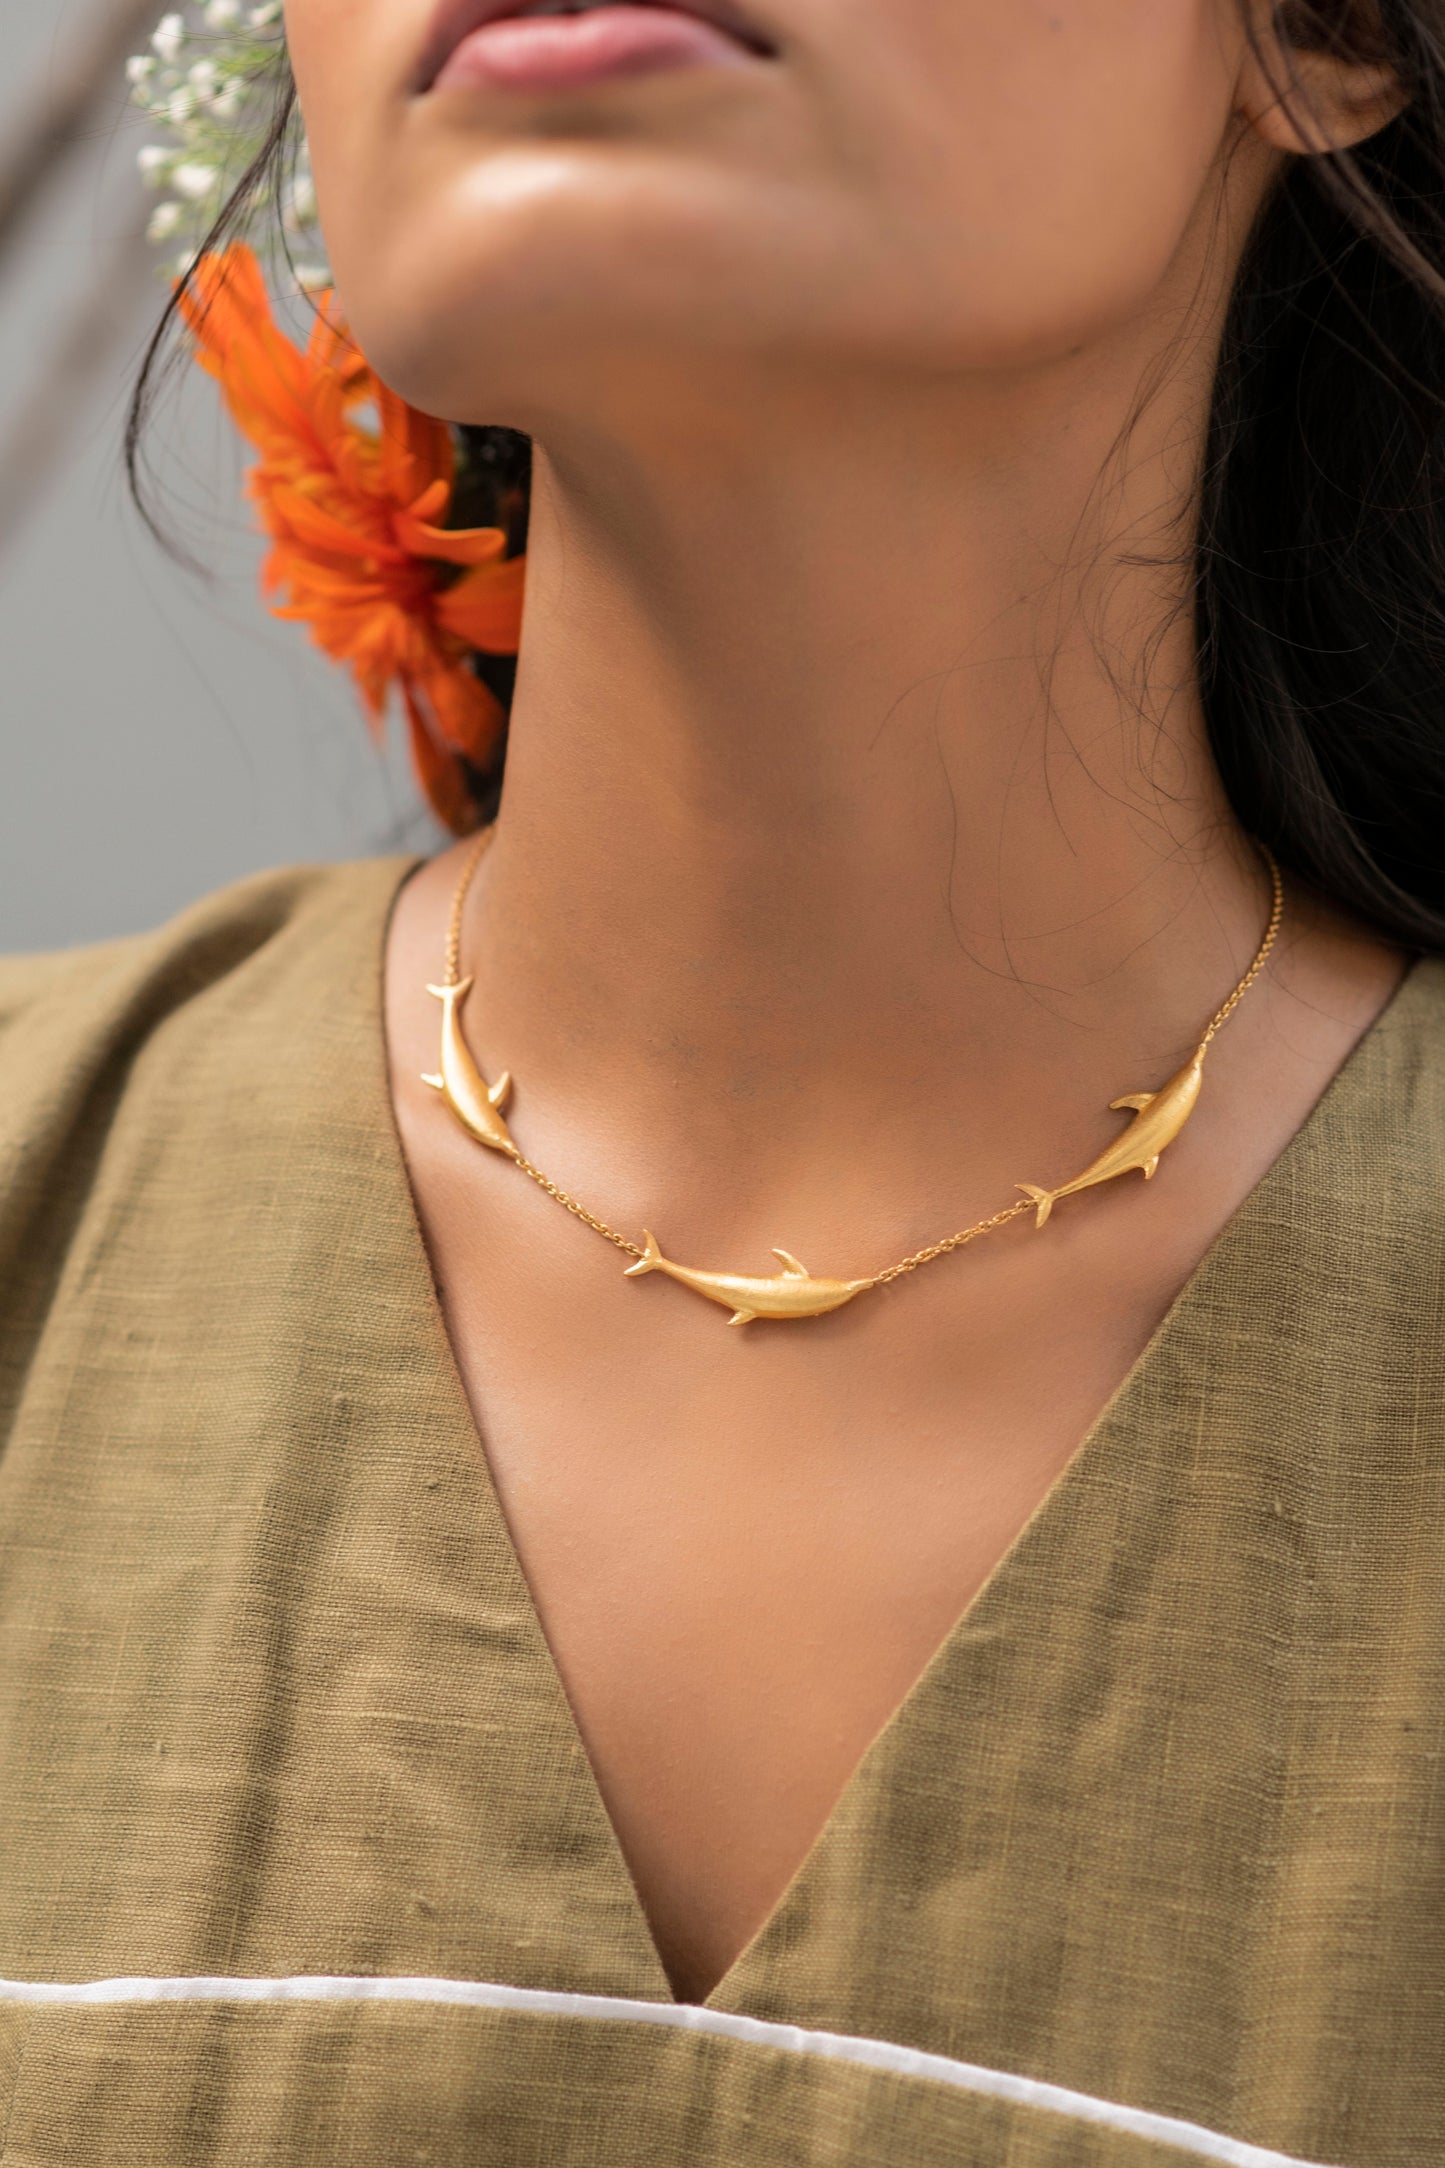 Vaquita necklace